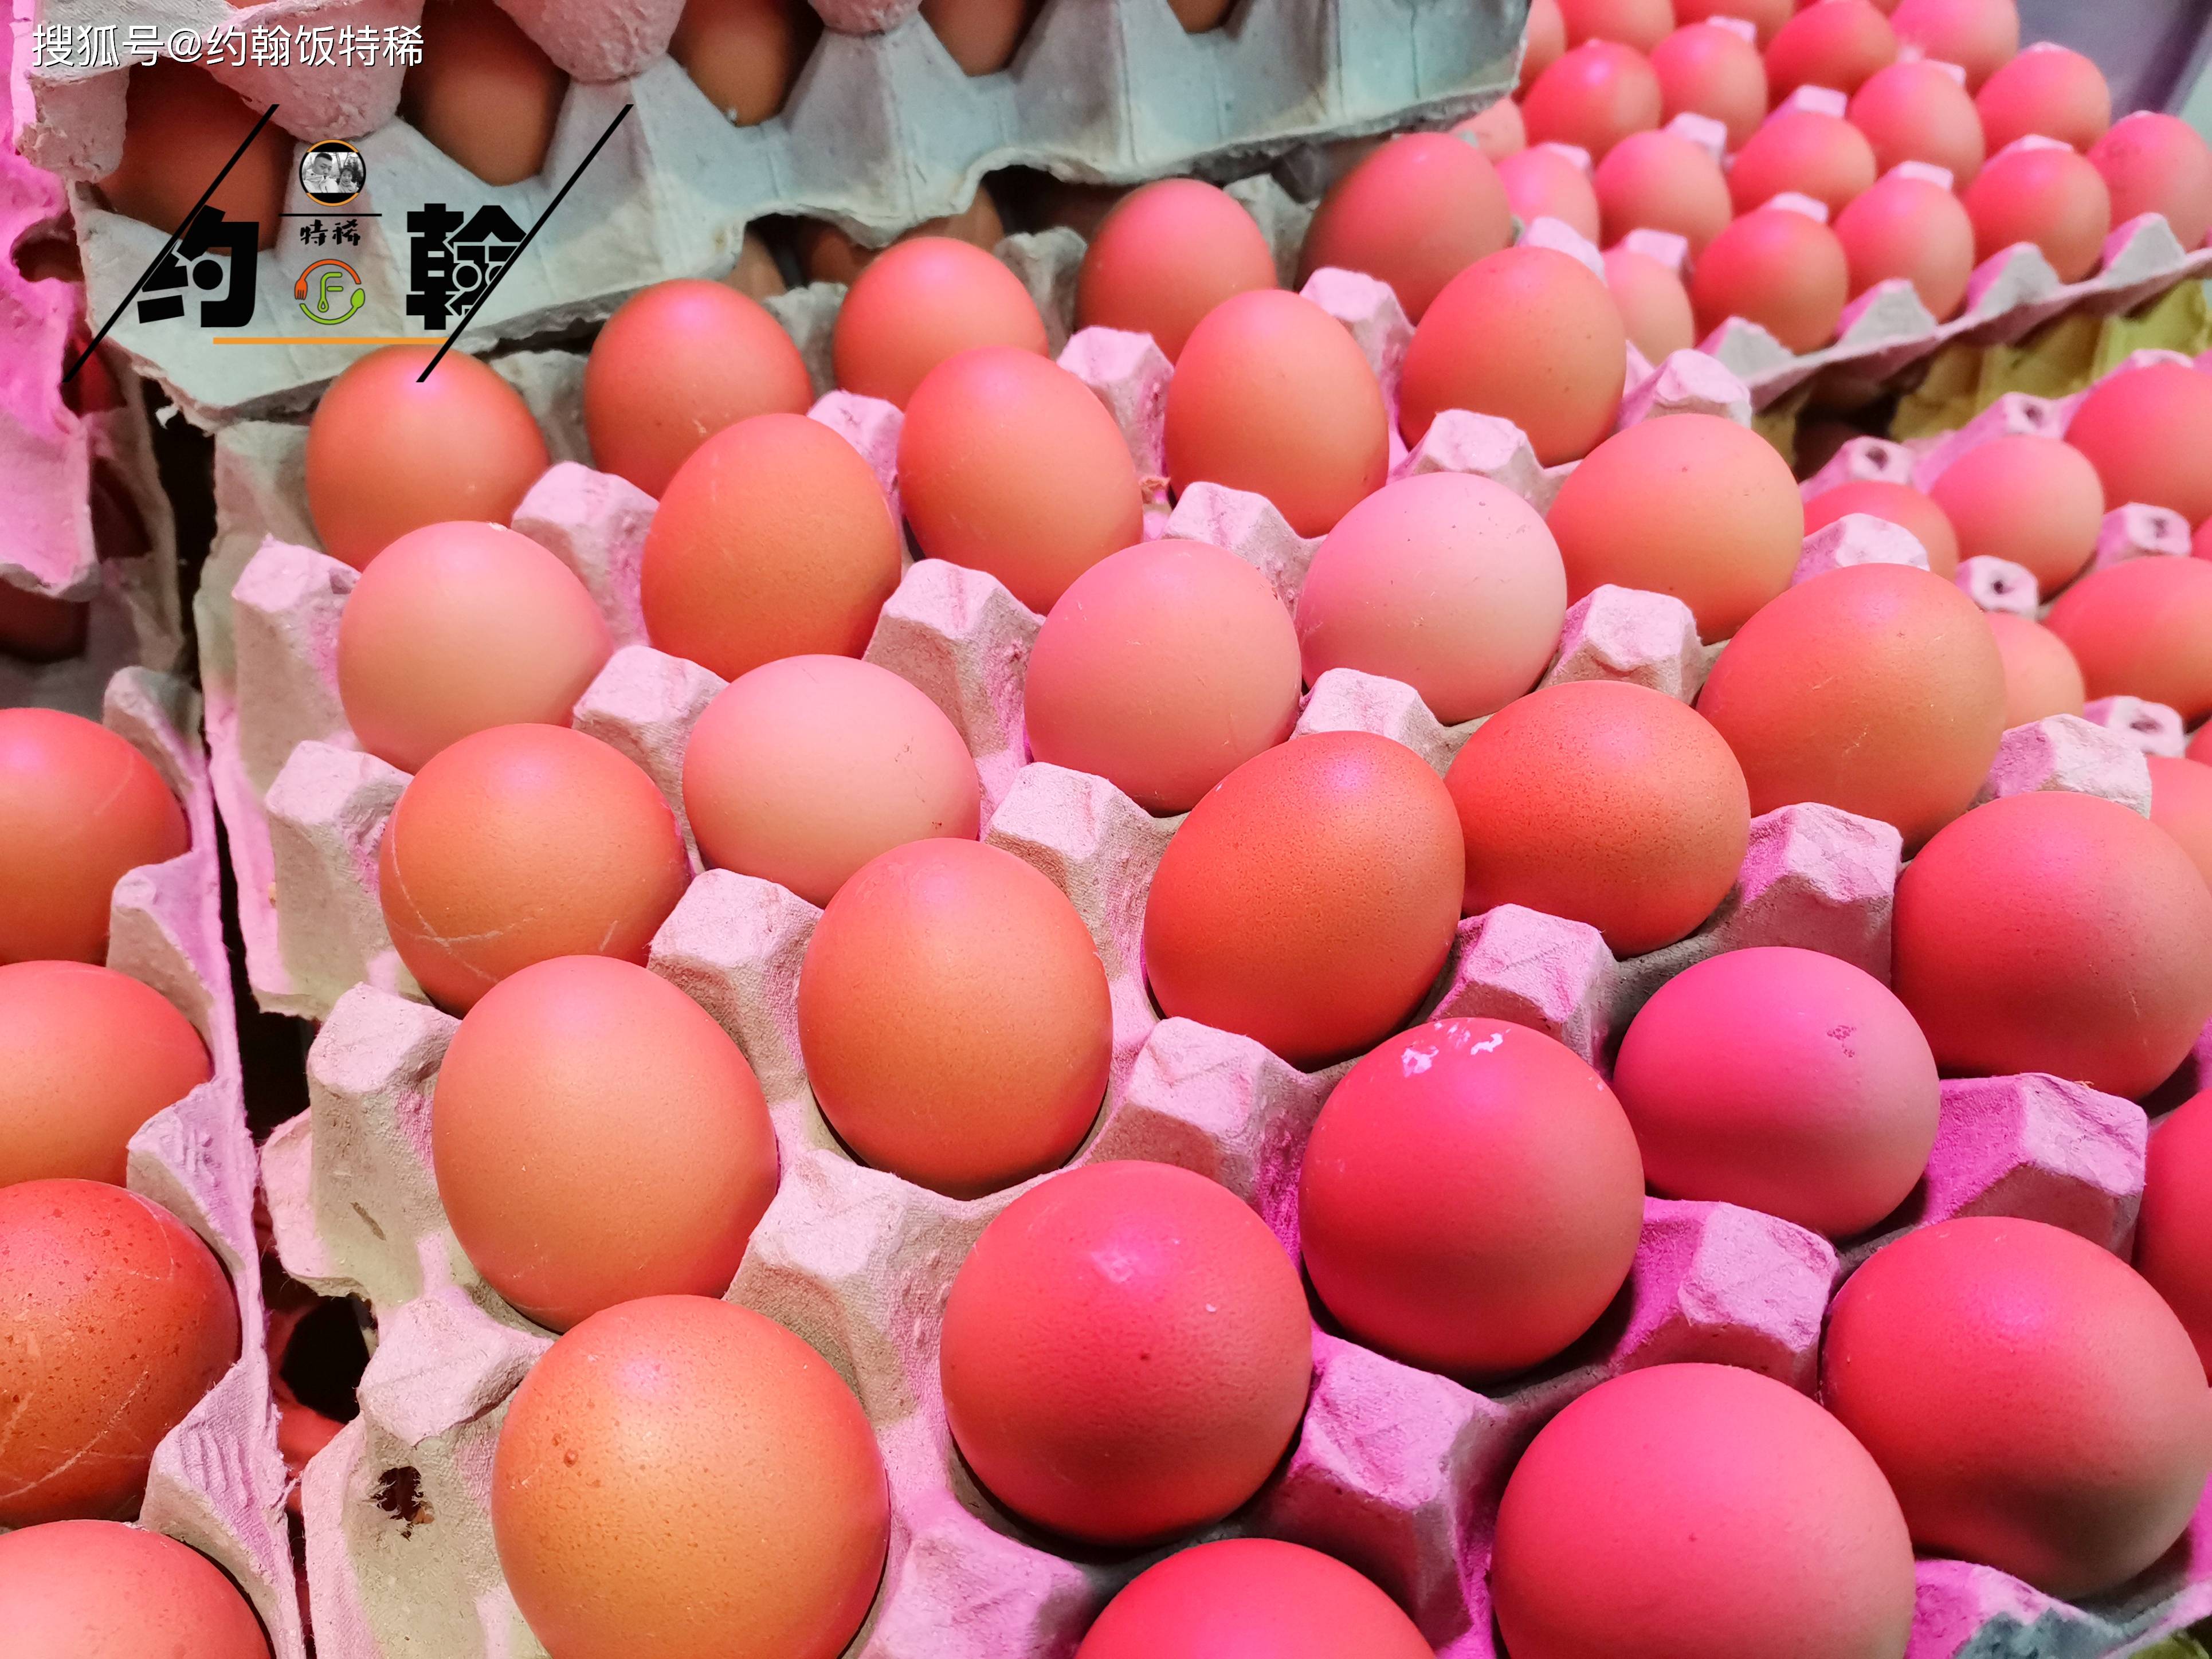 原创买鸡蛋时选红壳还是白壳牢记7不吃帮你买到健康好鸡蛋